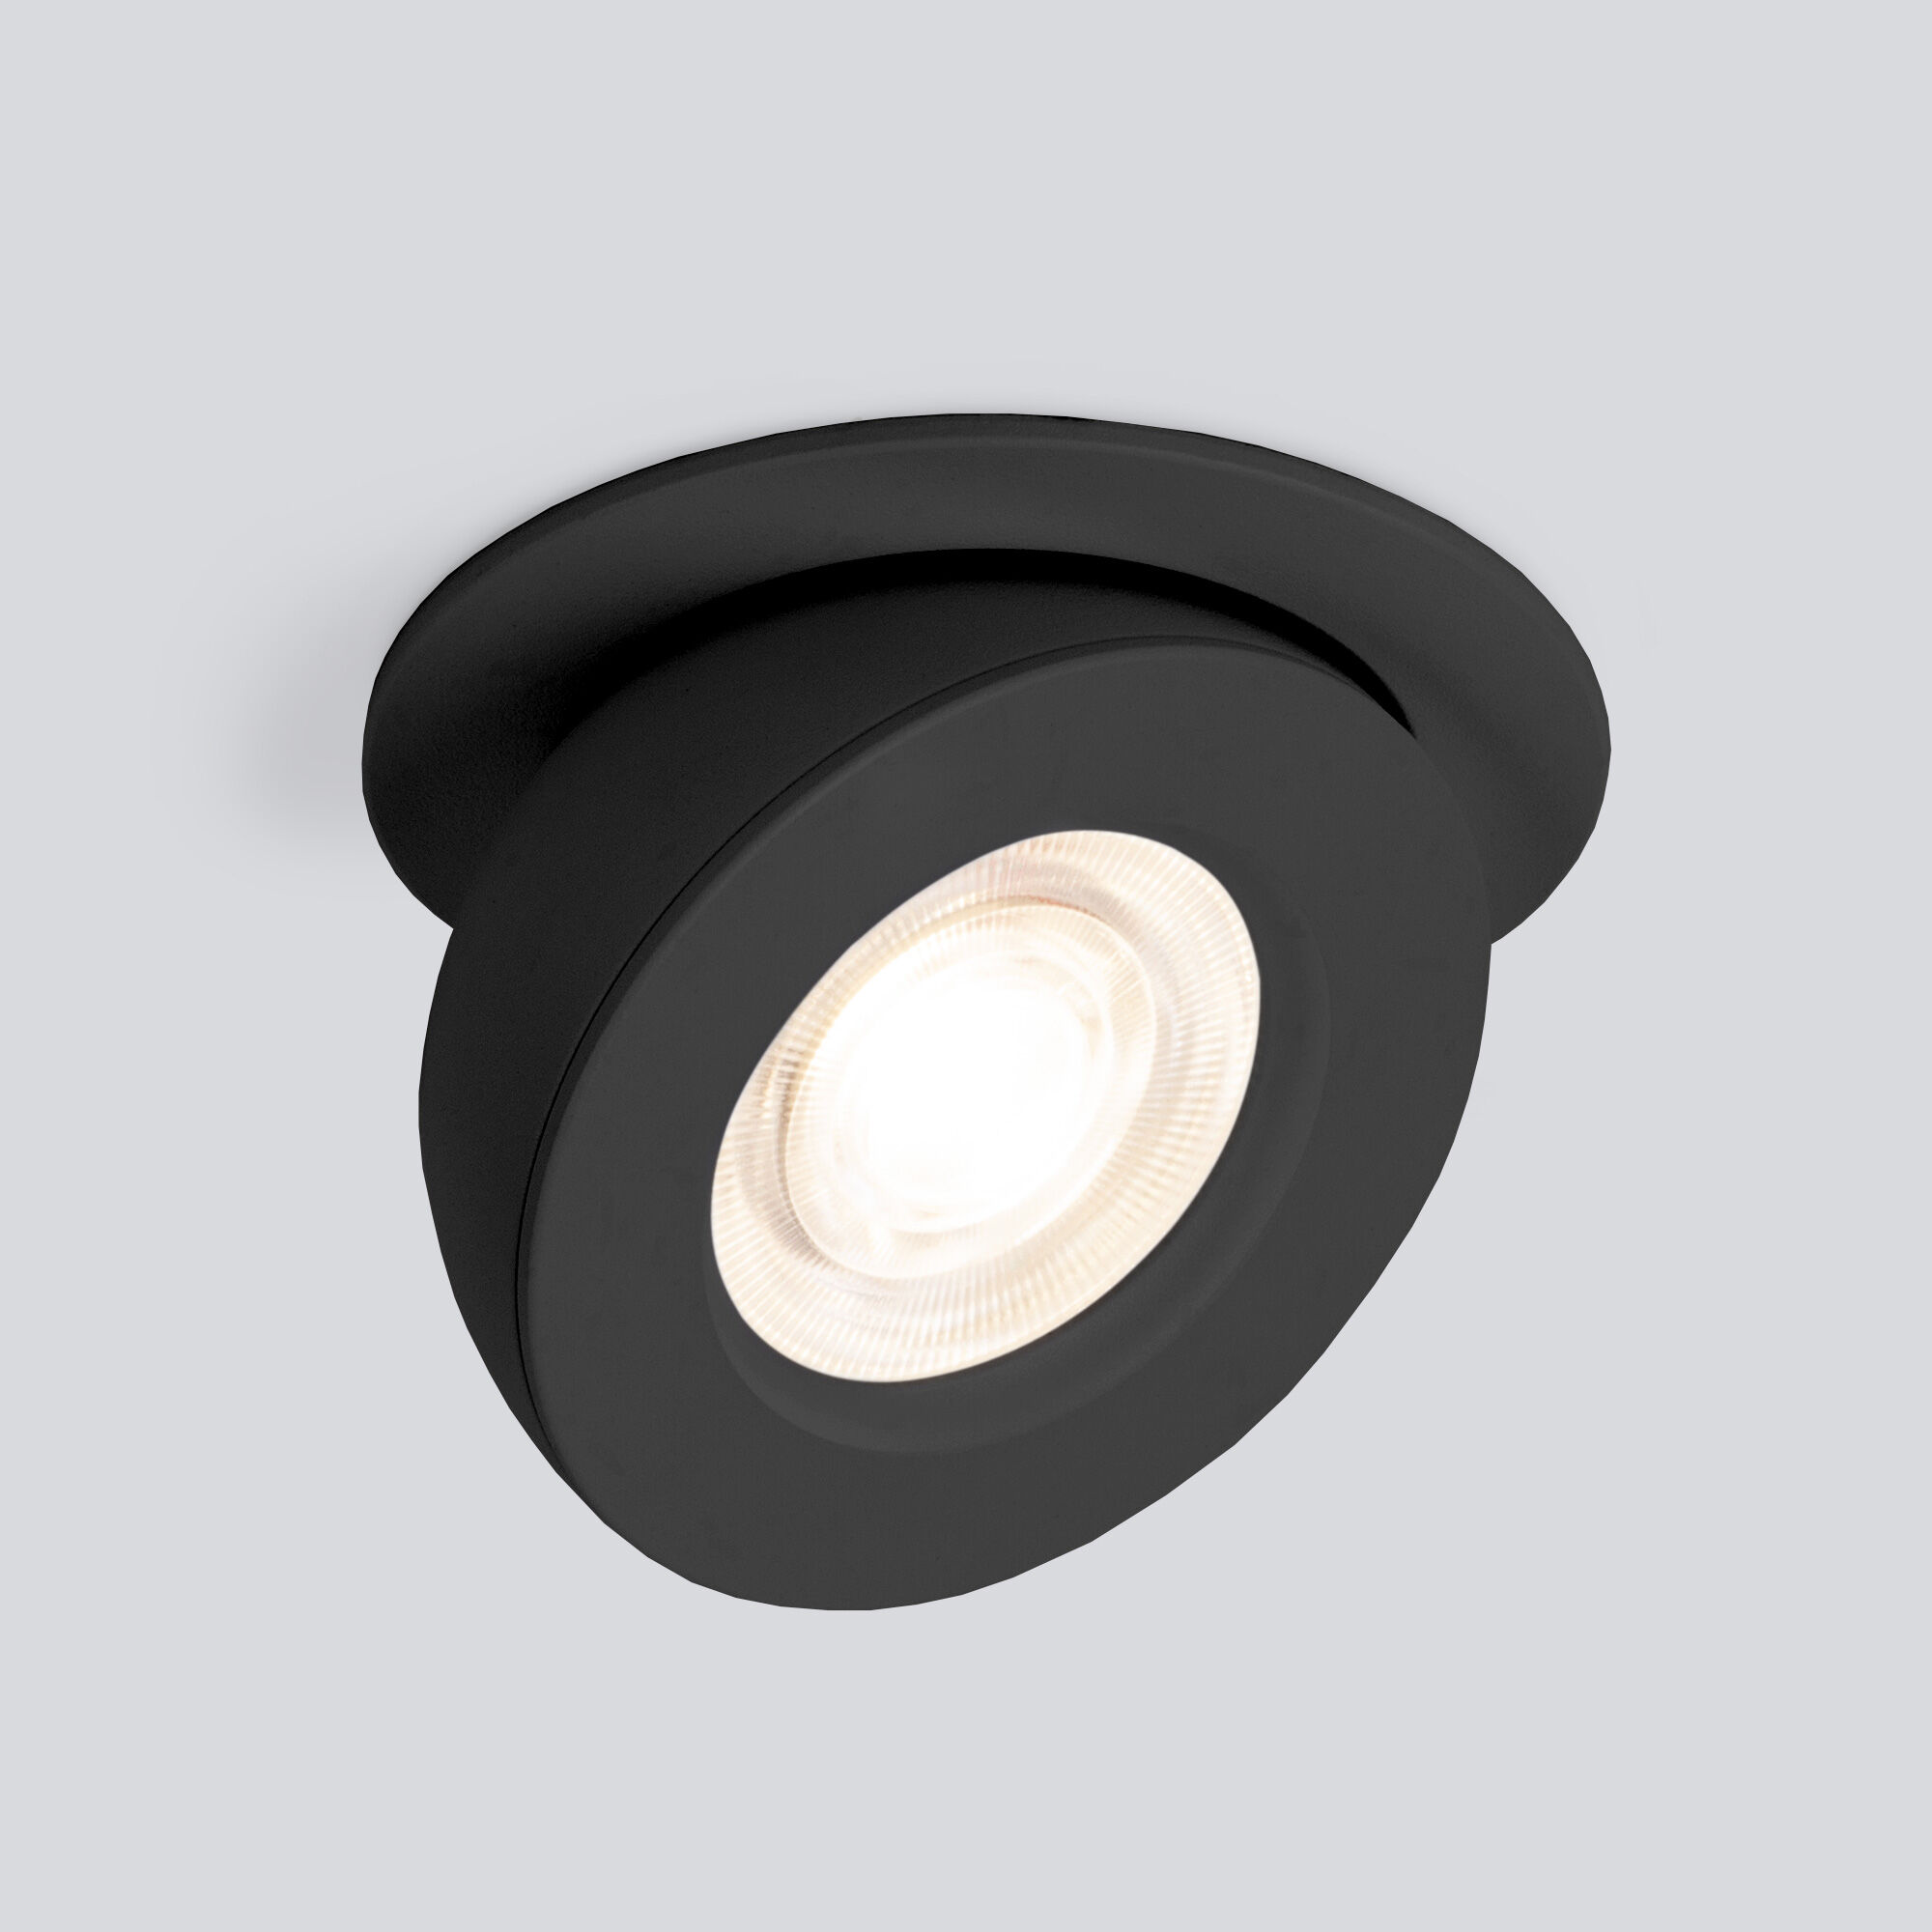 Встраиваемый точечный светодиодный светильник Pruno 25080/LED 8W 4200К чёрный